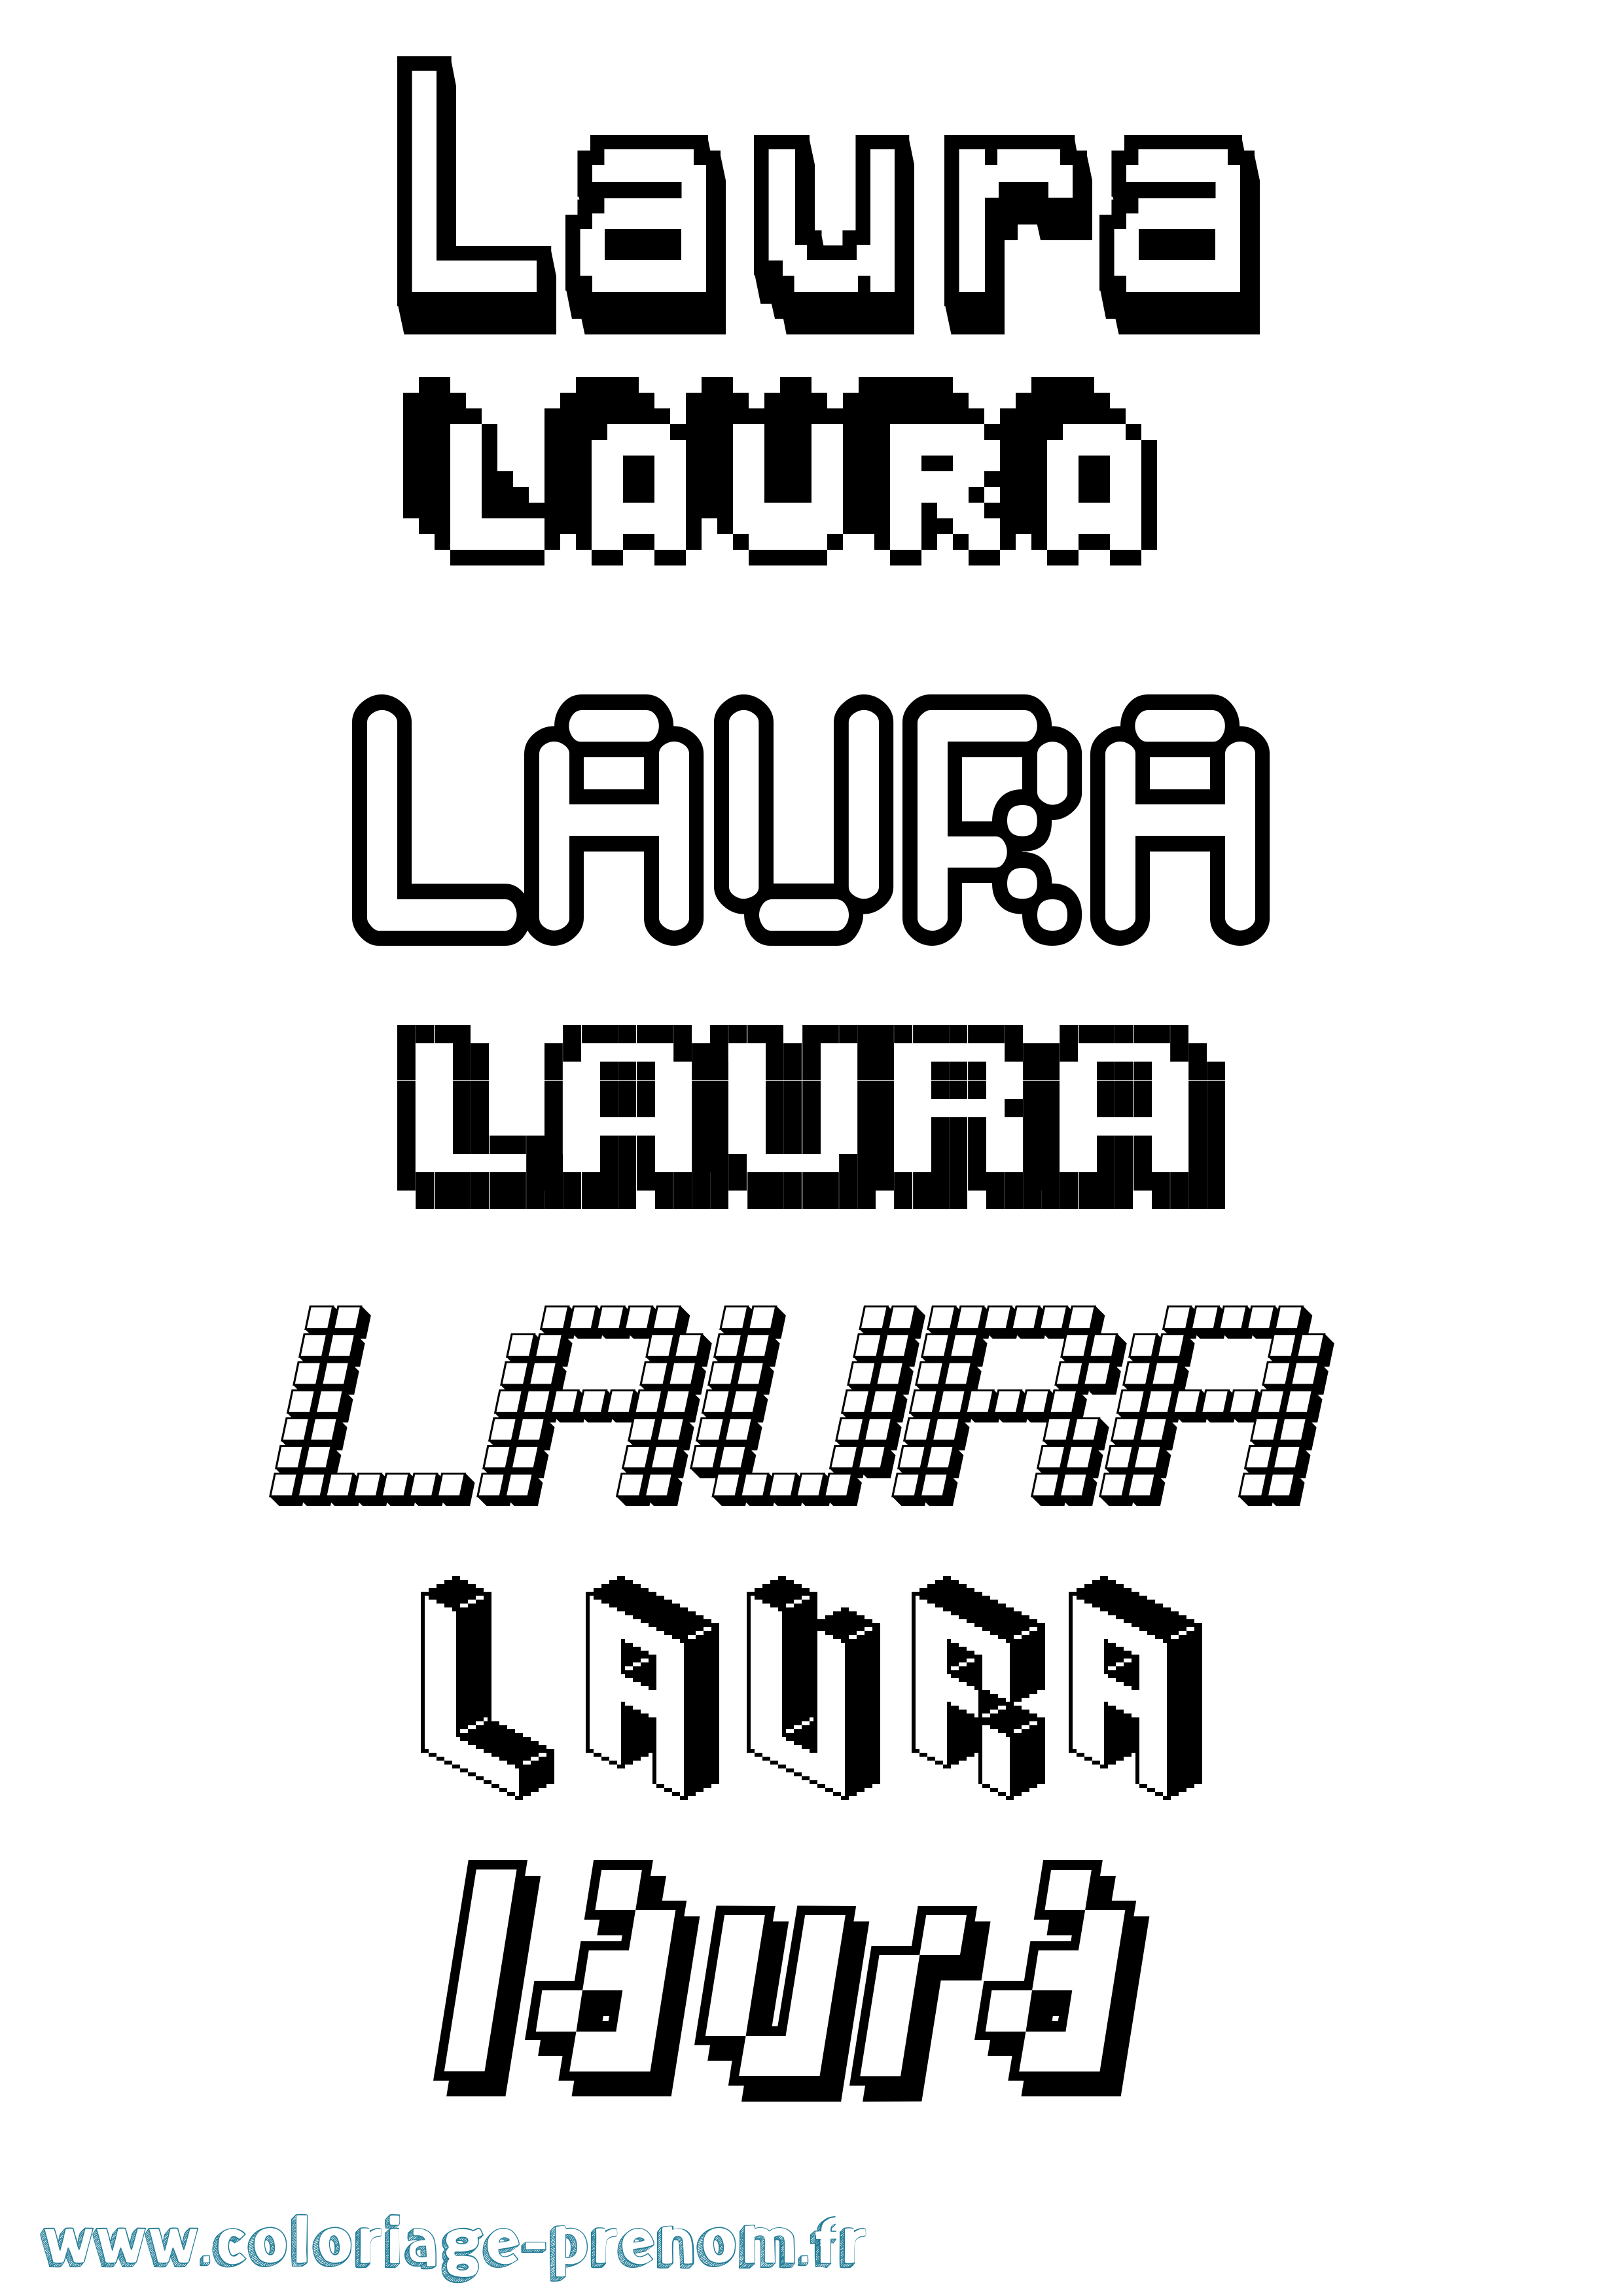 Coloriage prénom Laura Pixel